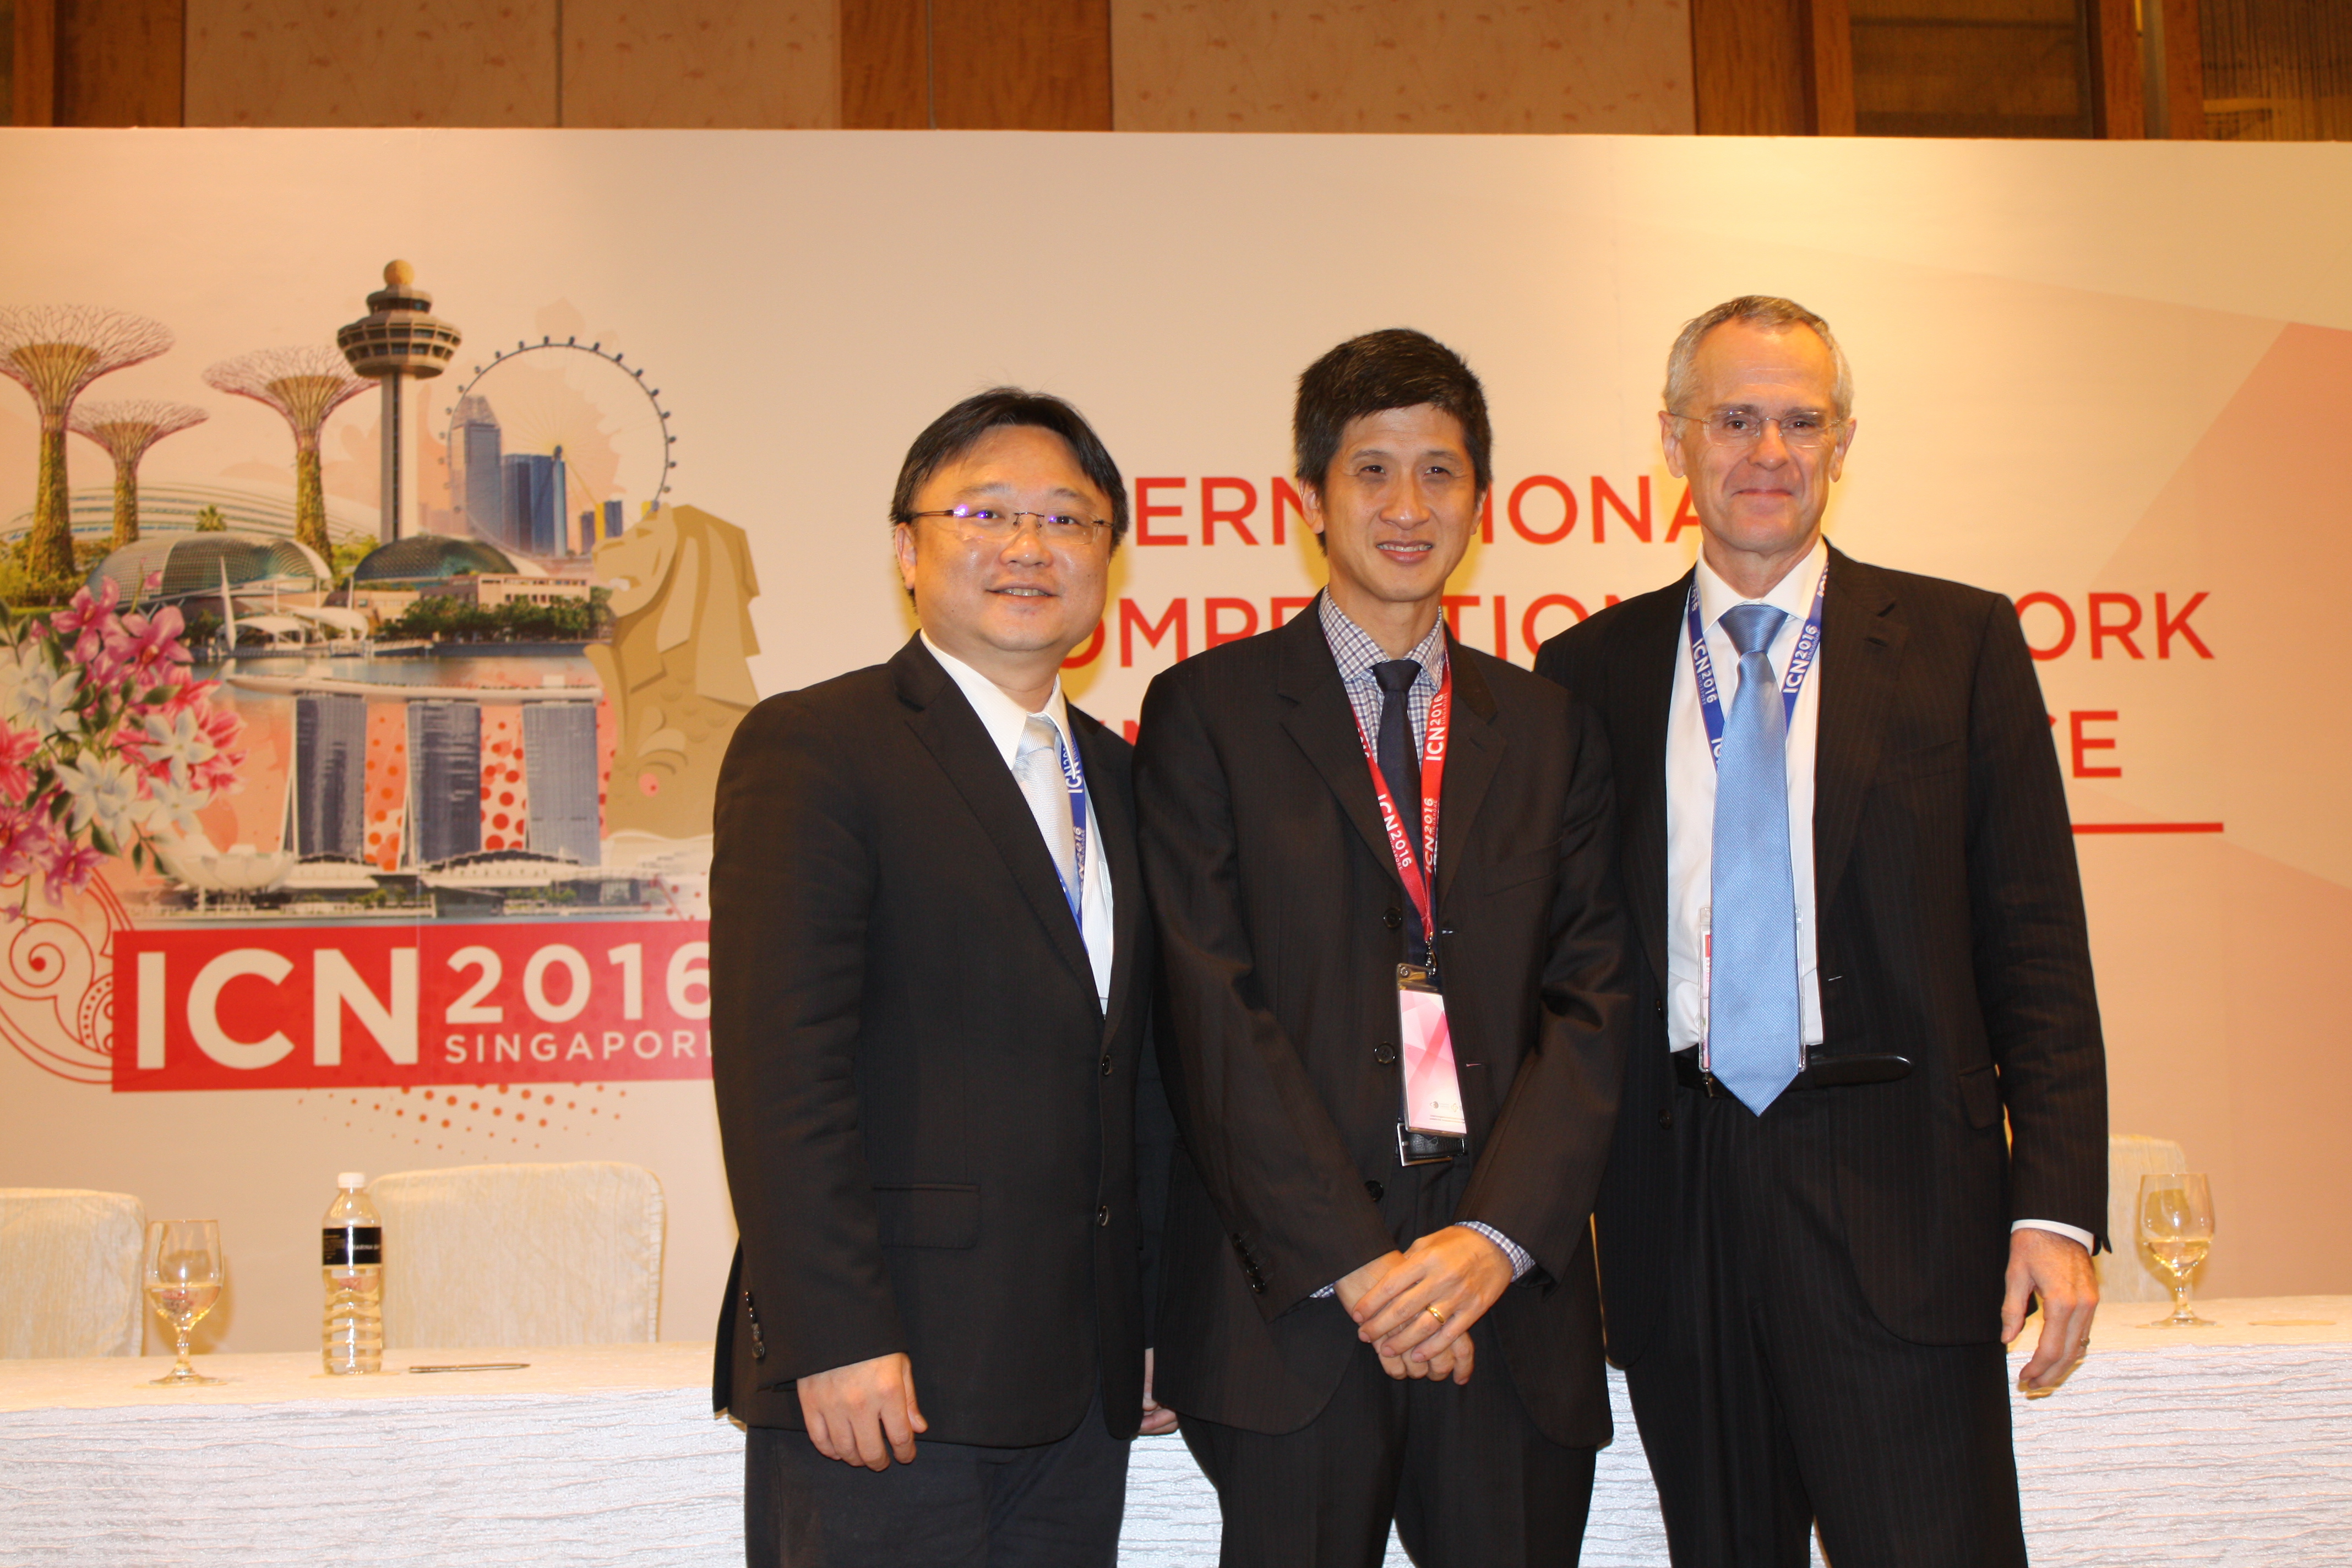 張委員宏浩參加本（105）年4月26日至29日於新加坡舉辦之「2016年國際競爭網絡年會」及相關會議